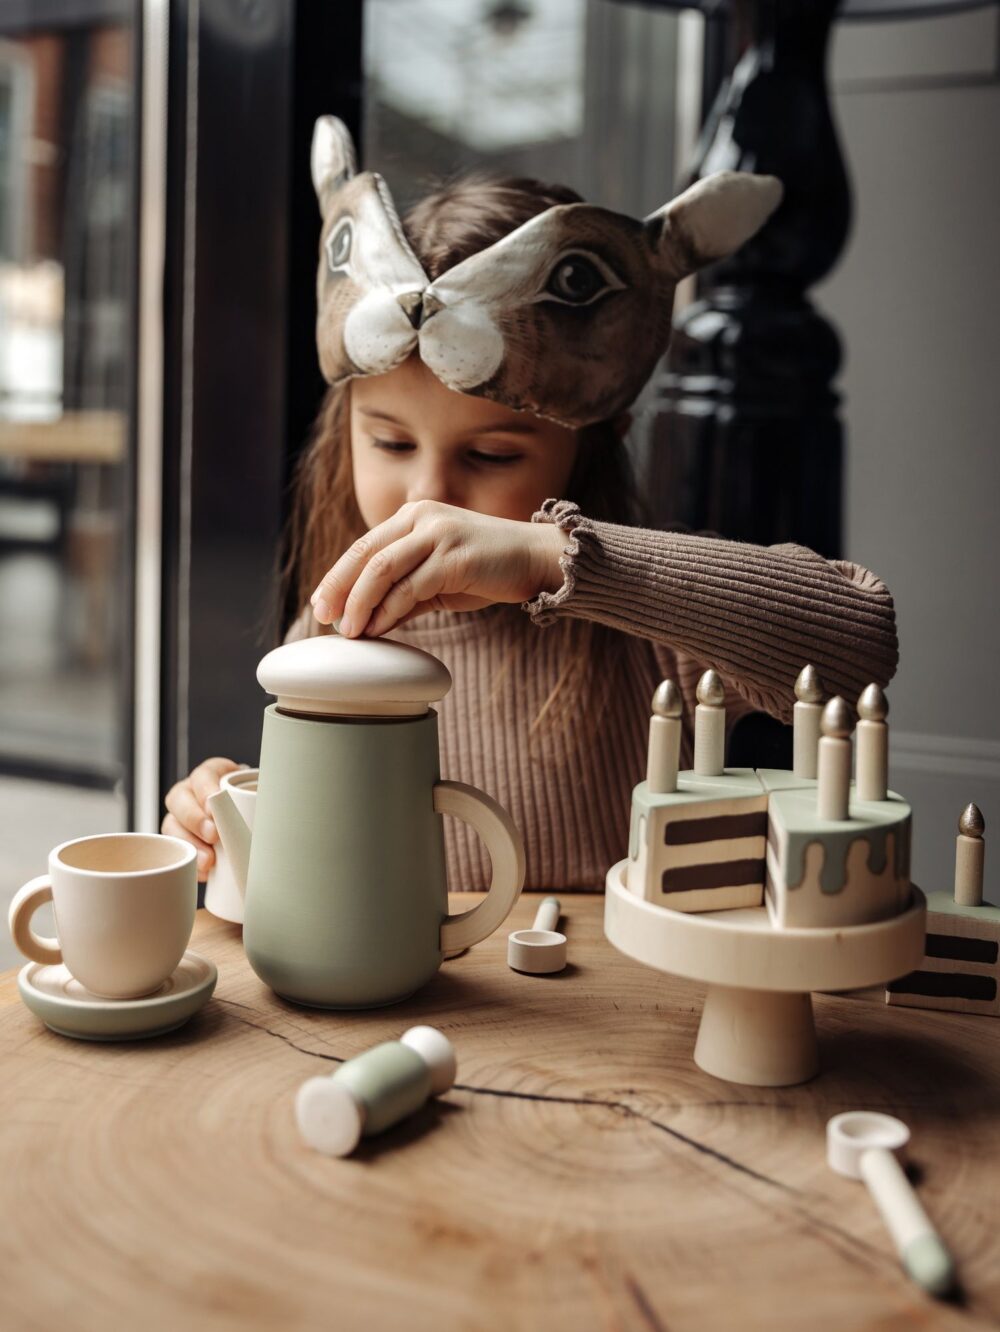 Девочка в милой маске зайчика и коричневой кофте играет с детским игровым набором для чаепития.